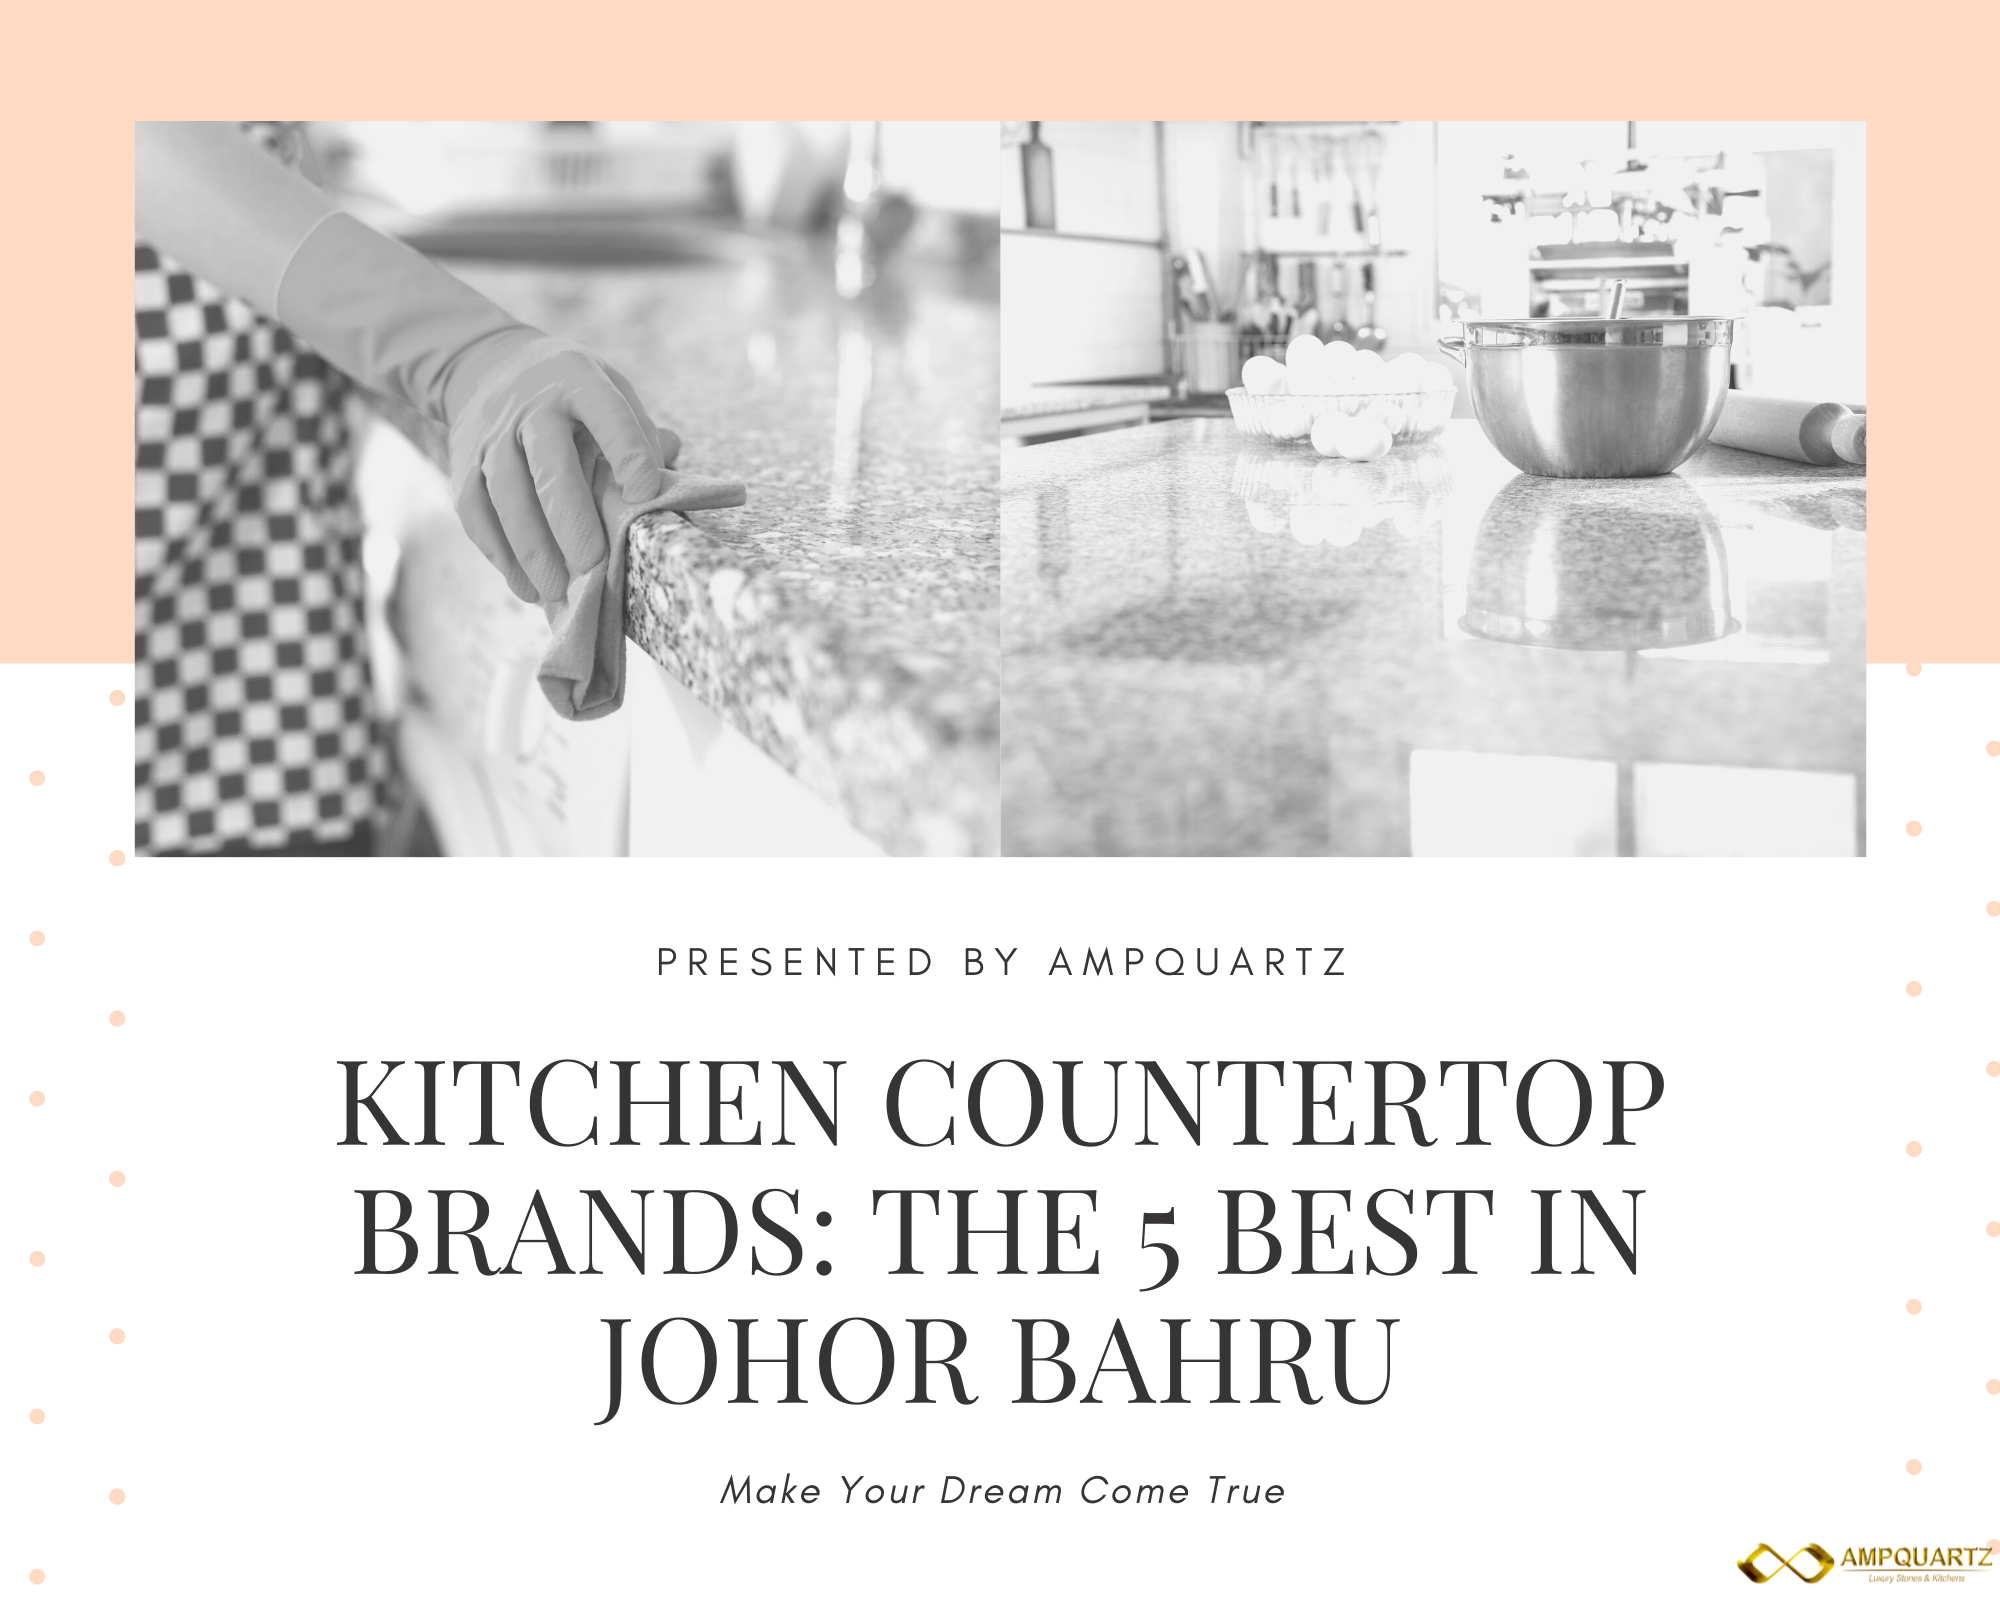 Kitchen Countertop Brands The 5 Best in Johor Bahru (1)